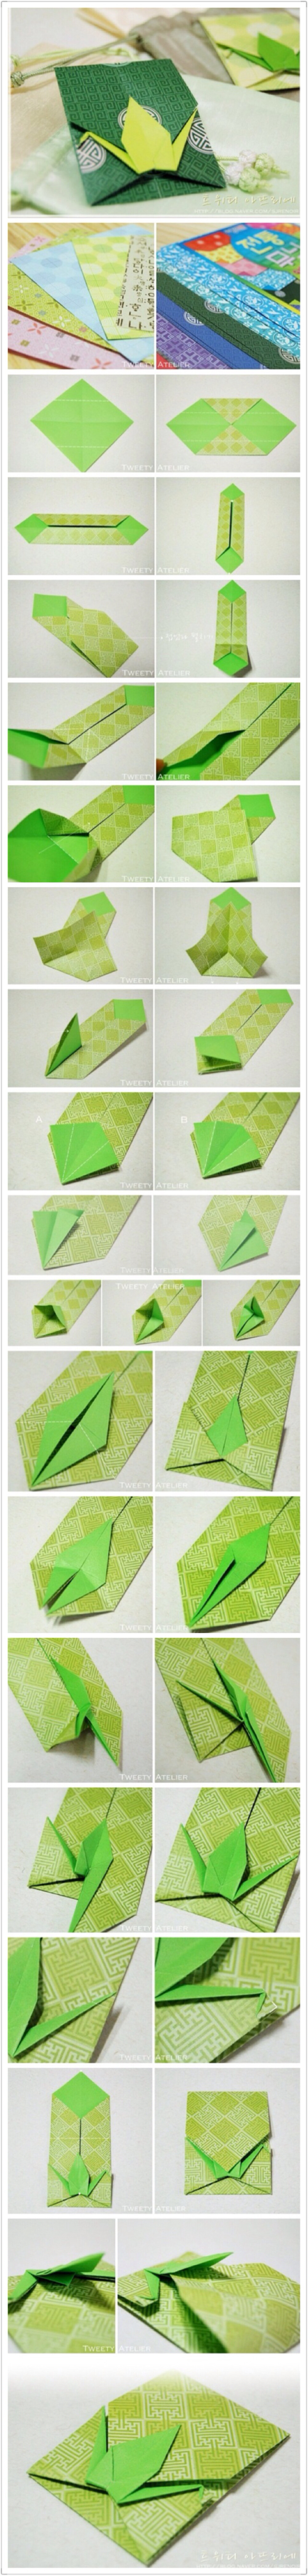 千纸鹤折纸包装图解